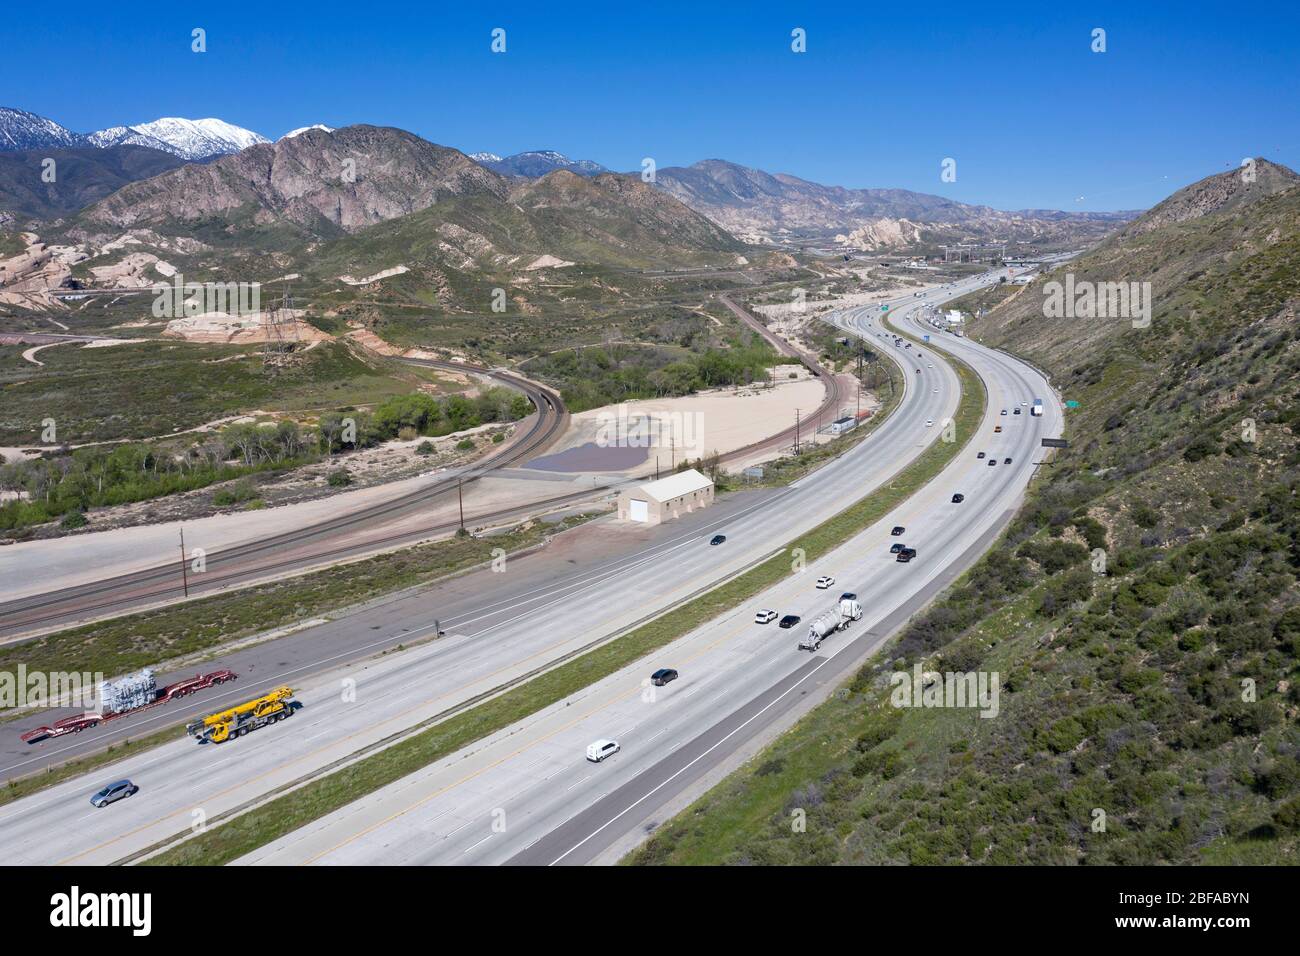 Luftaufnahme der Interstate 15 (I-15) Autobahn, wie es die Steigung am Cajon Pass steigt, der Los Angeles mit der Wüste und Las Vegas verbindet Stockfoto